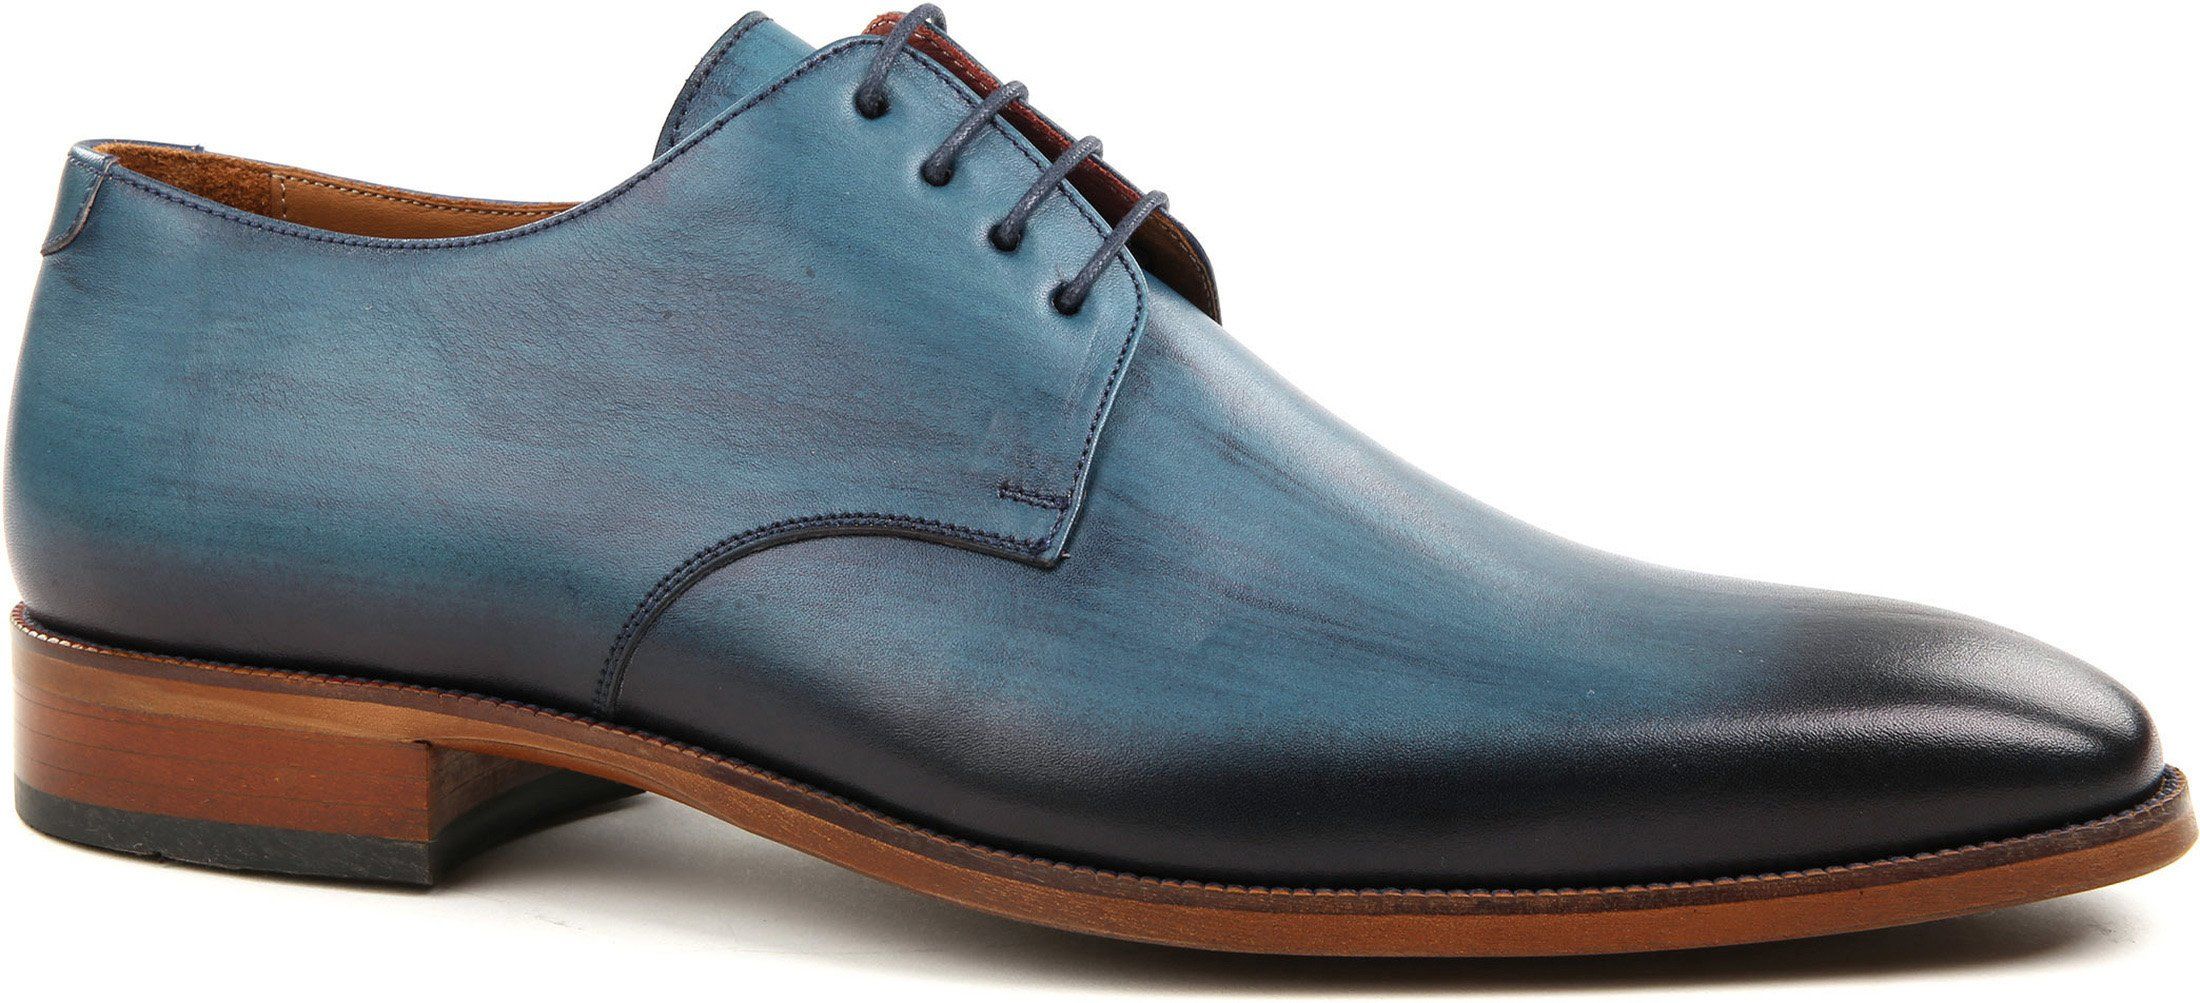 Suitable Shoe Leather Blue size 7.5